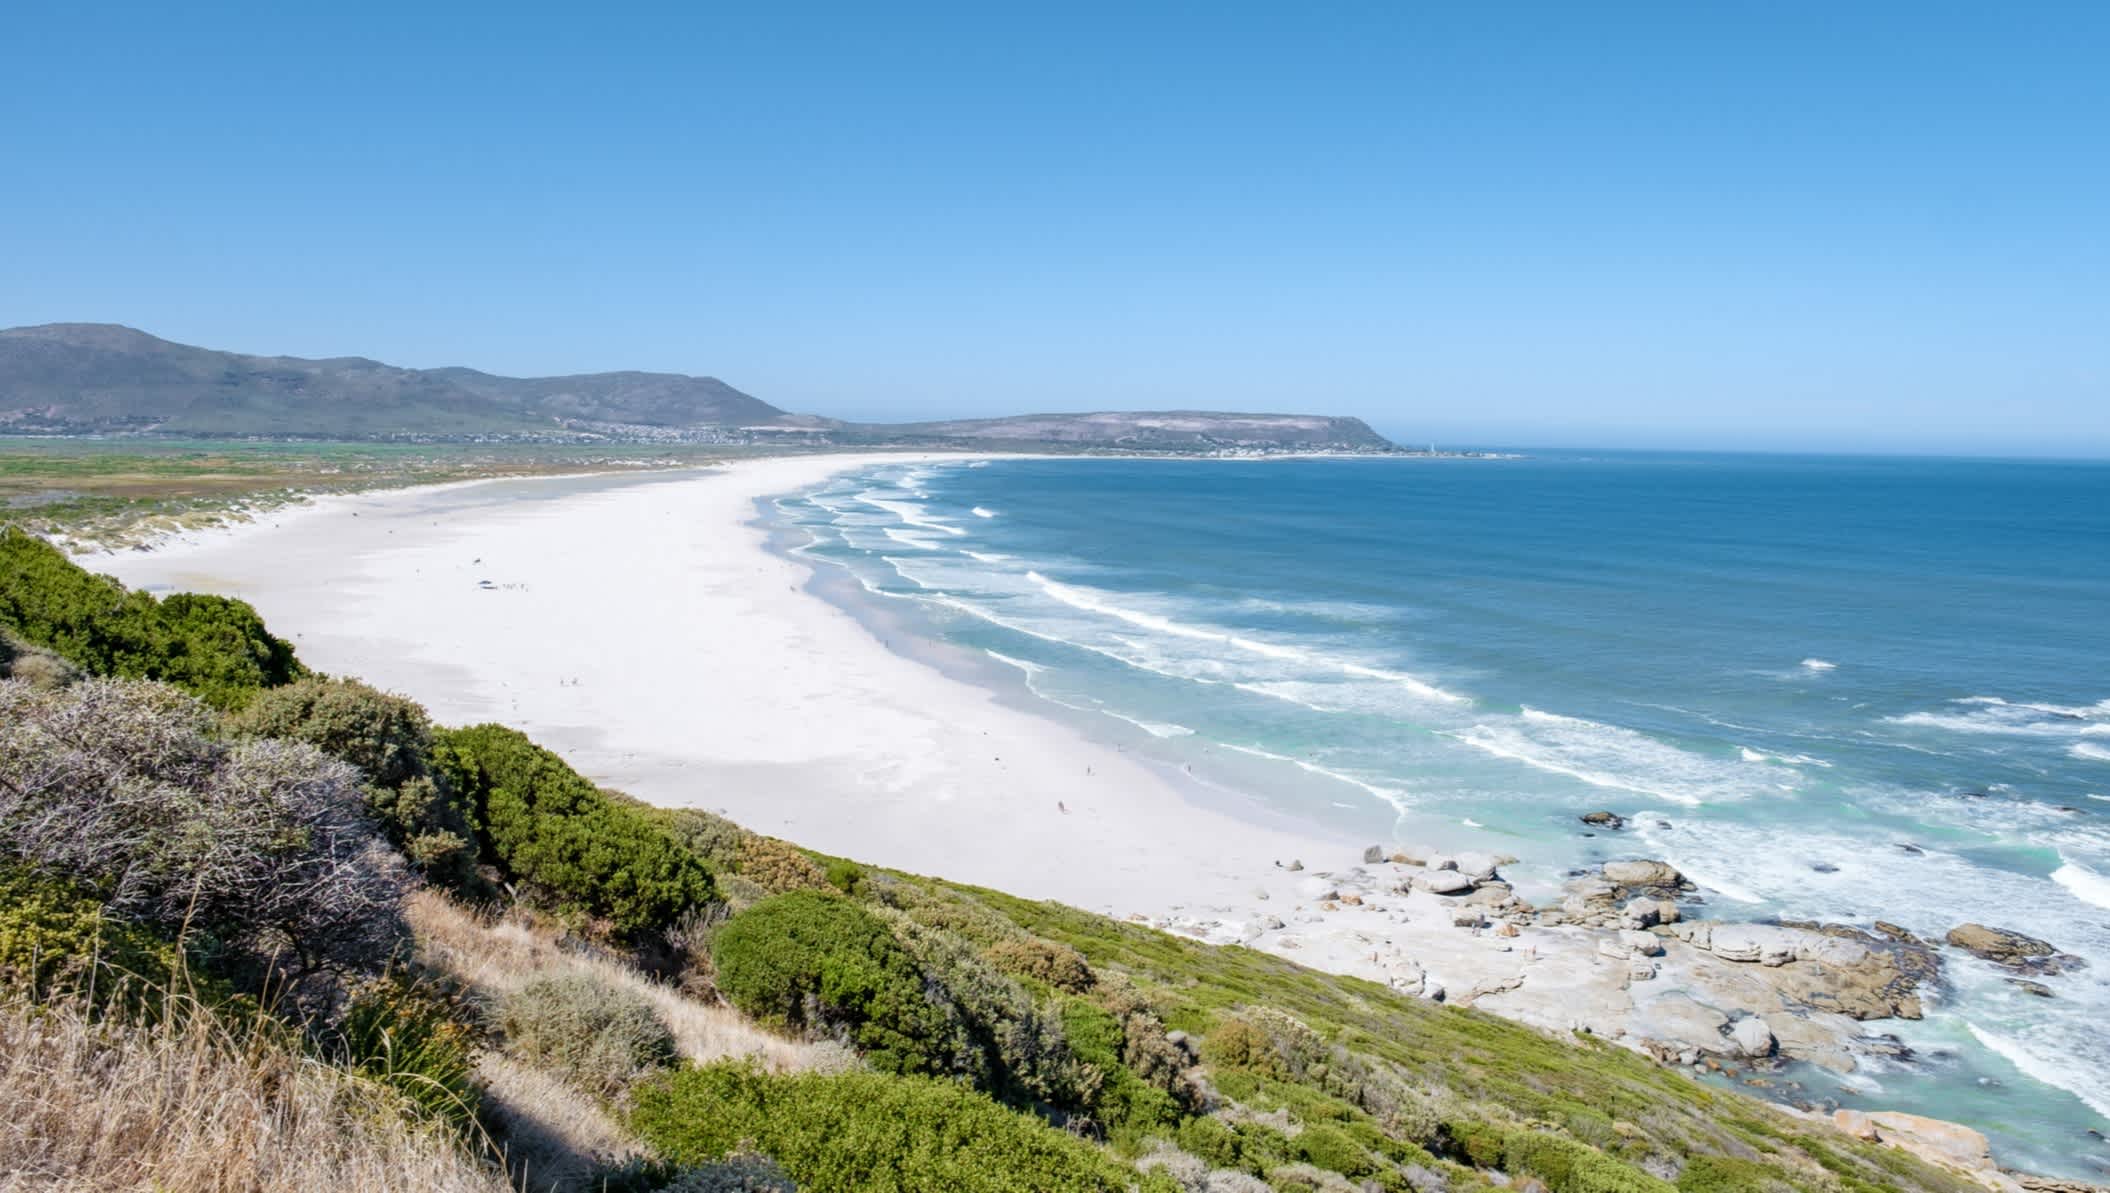 La belle plage de sable blanc de Noordhoek, située le long de Chapman's Peak Drive à proximité du Cap, Afrique du Sud.